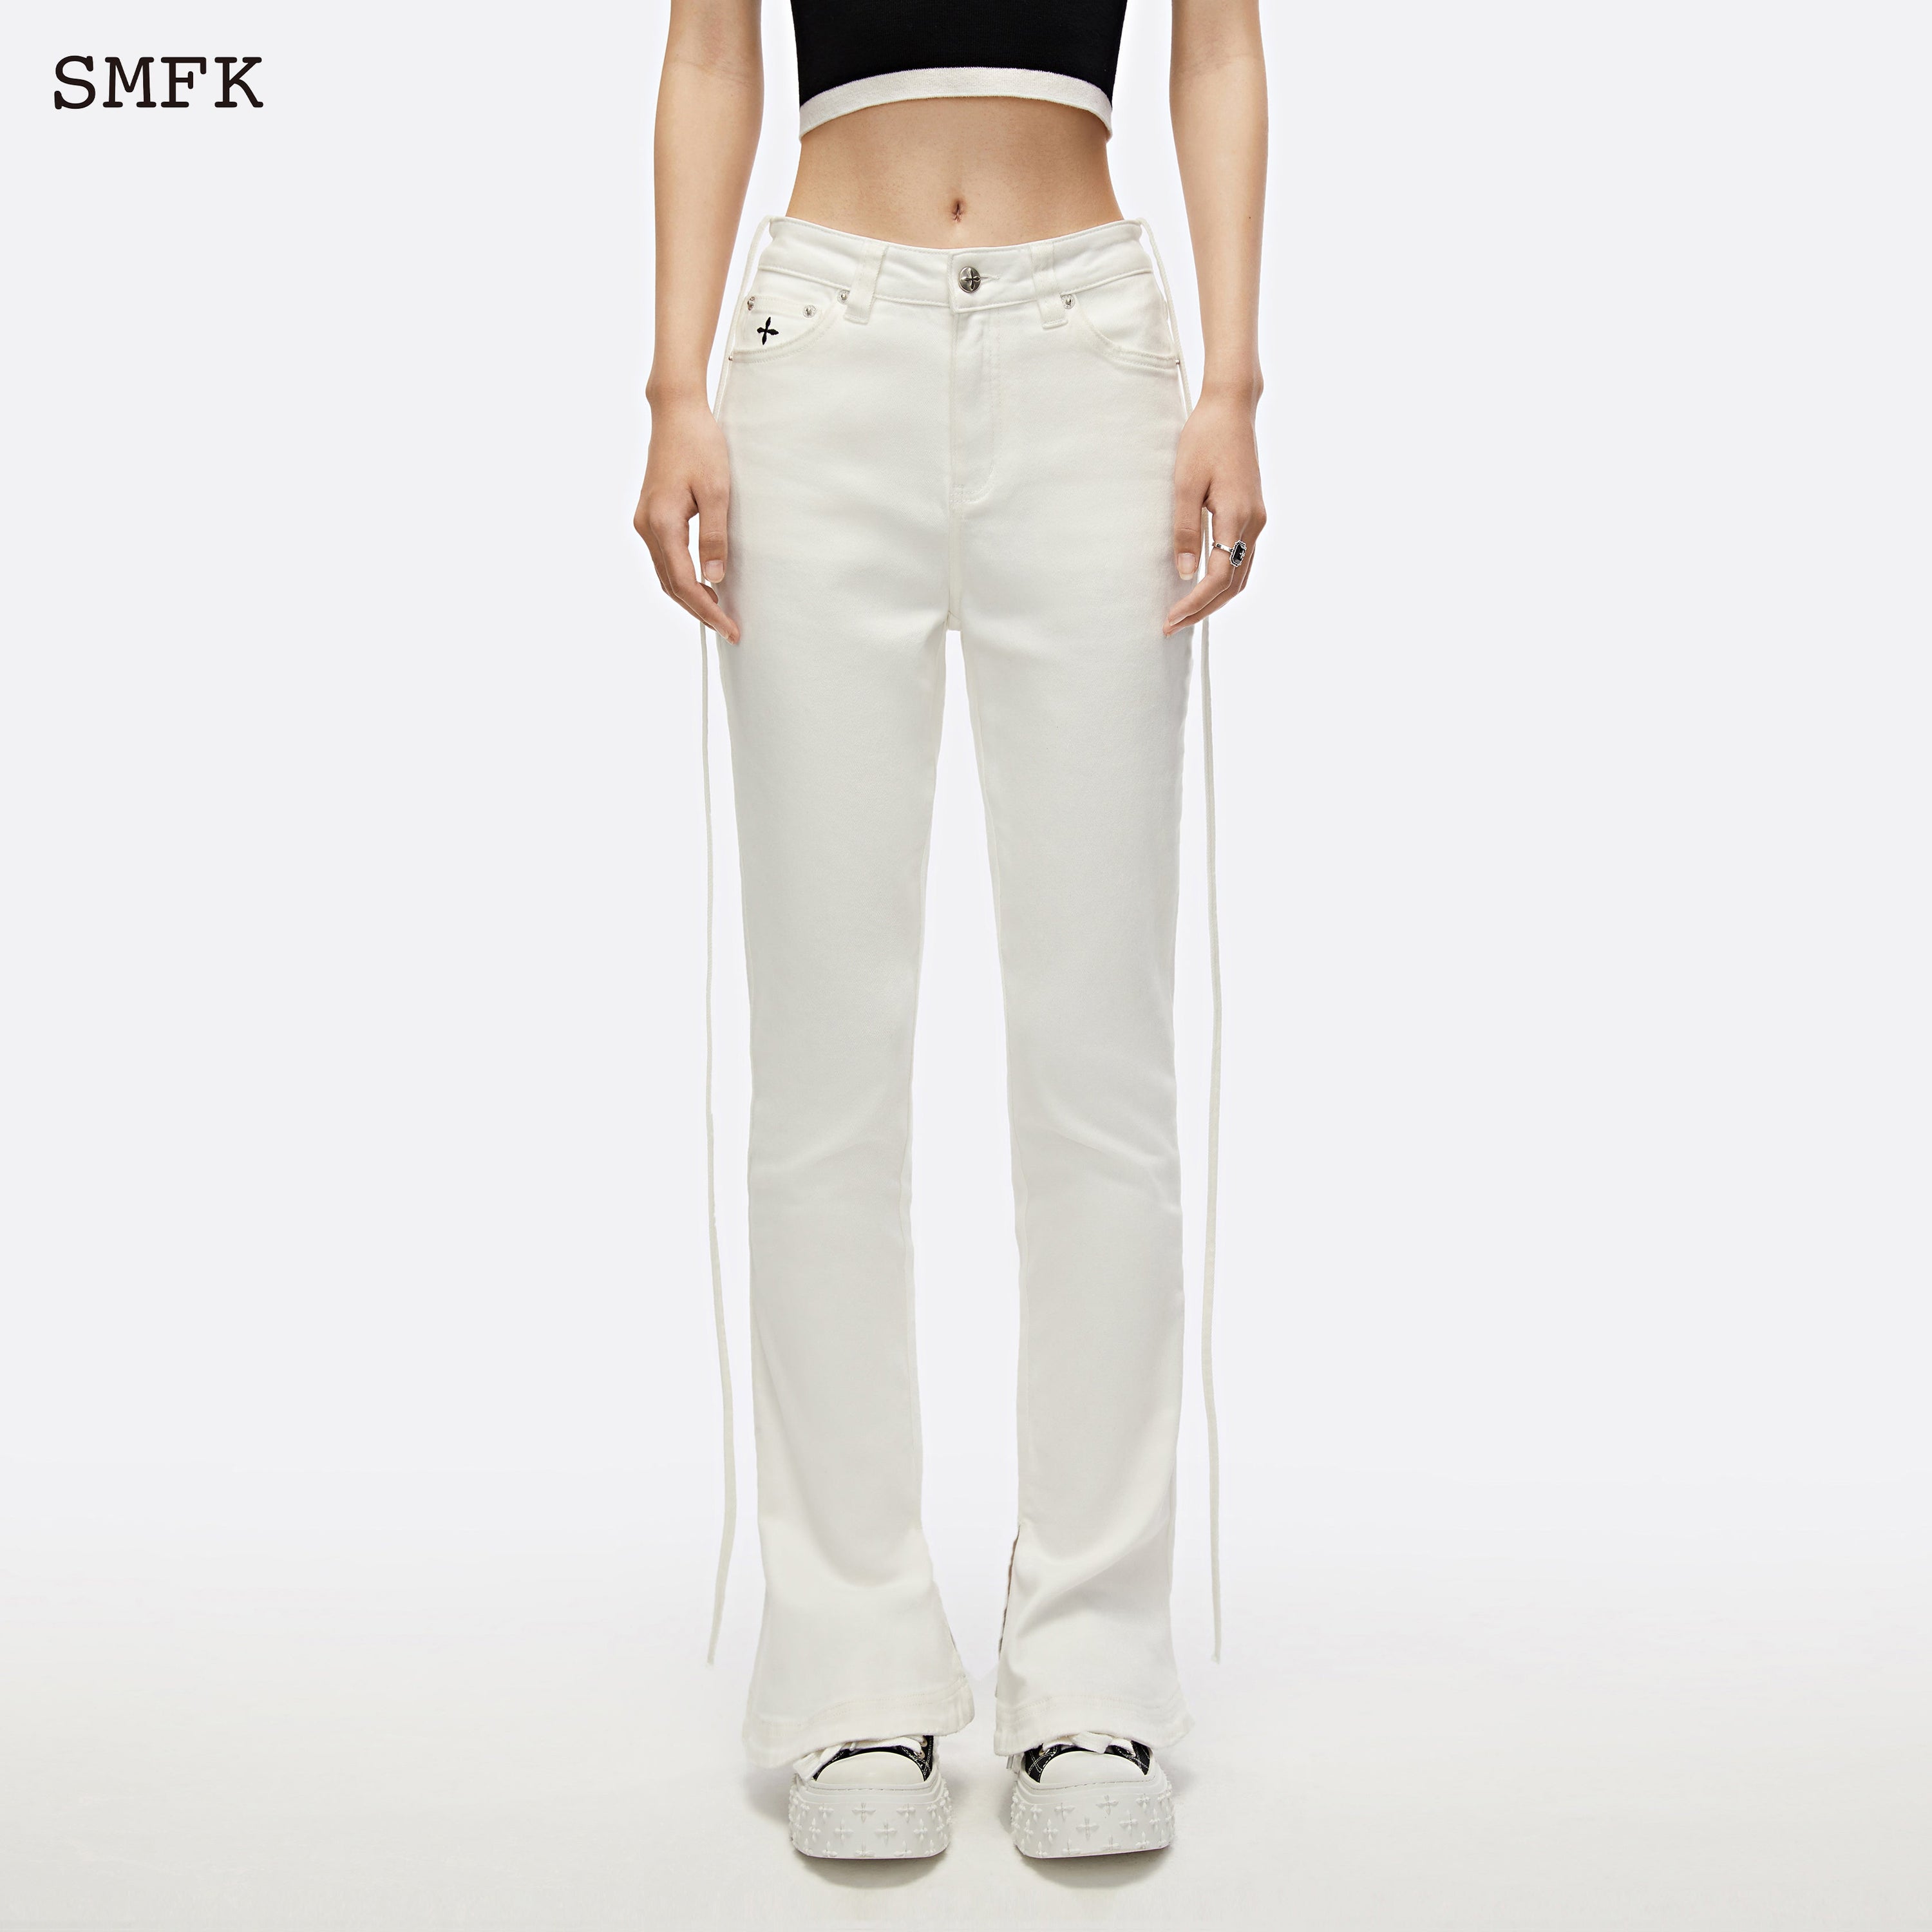 Mermaid Skinny Jeans White - SMFK Official